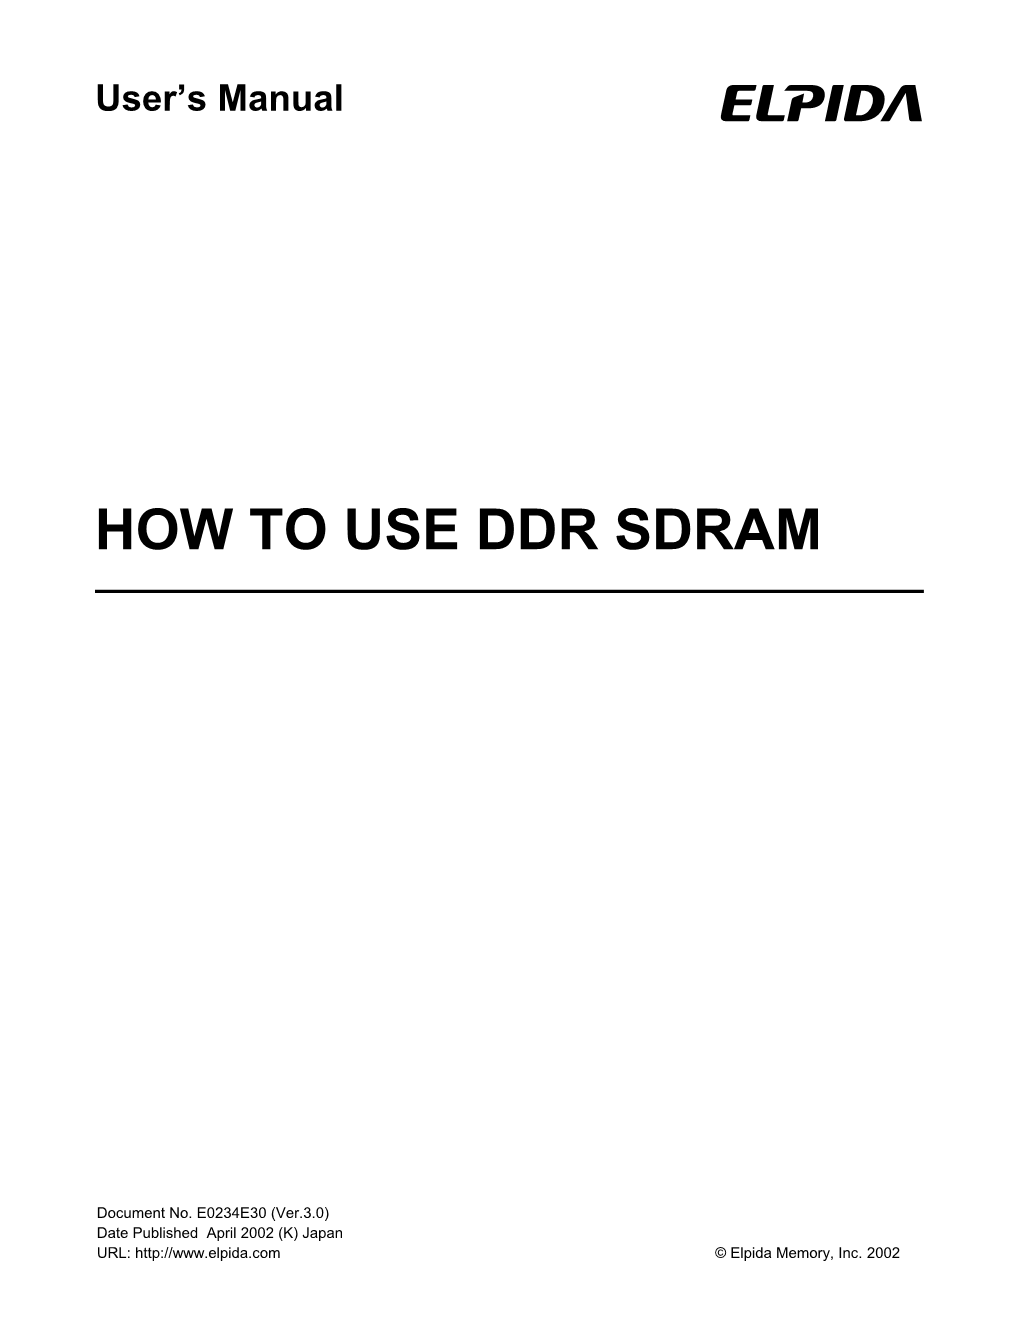 How to Use Ddr Sdram Um